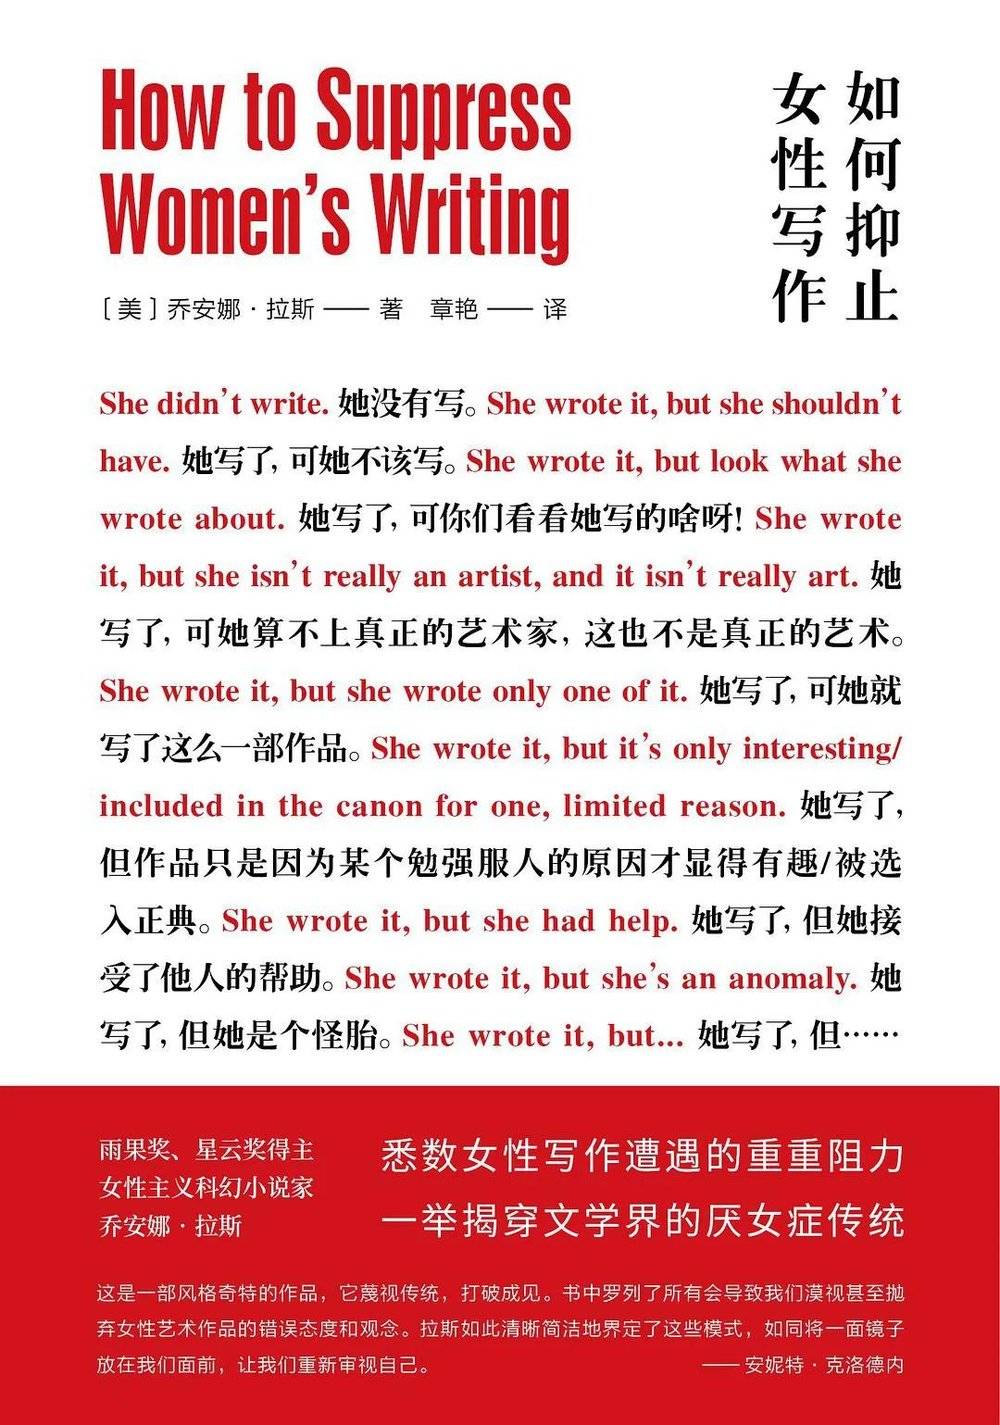 《如何抑止女性写作》[美]乔安娜·拉斯（Joanna Russ）著，章艳 译。南京大学出版社，2020-11